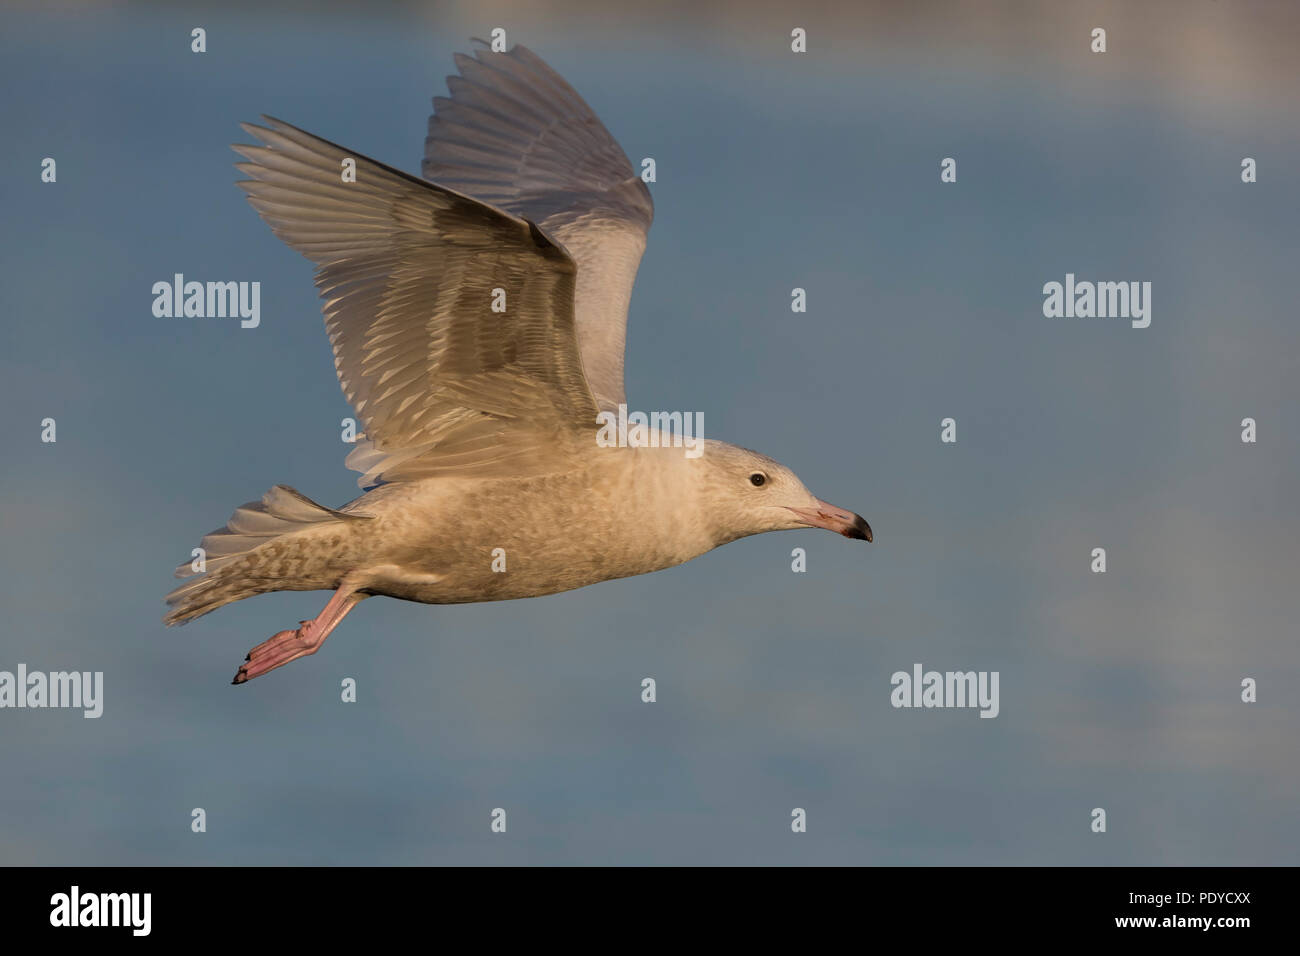 Flying Glaucous Gull; Larus hyperboreus Stock Photo